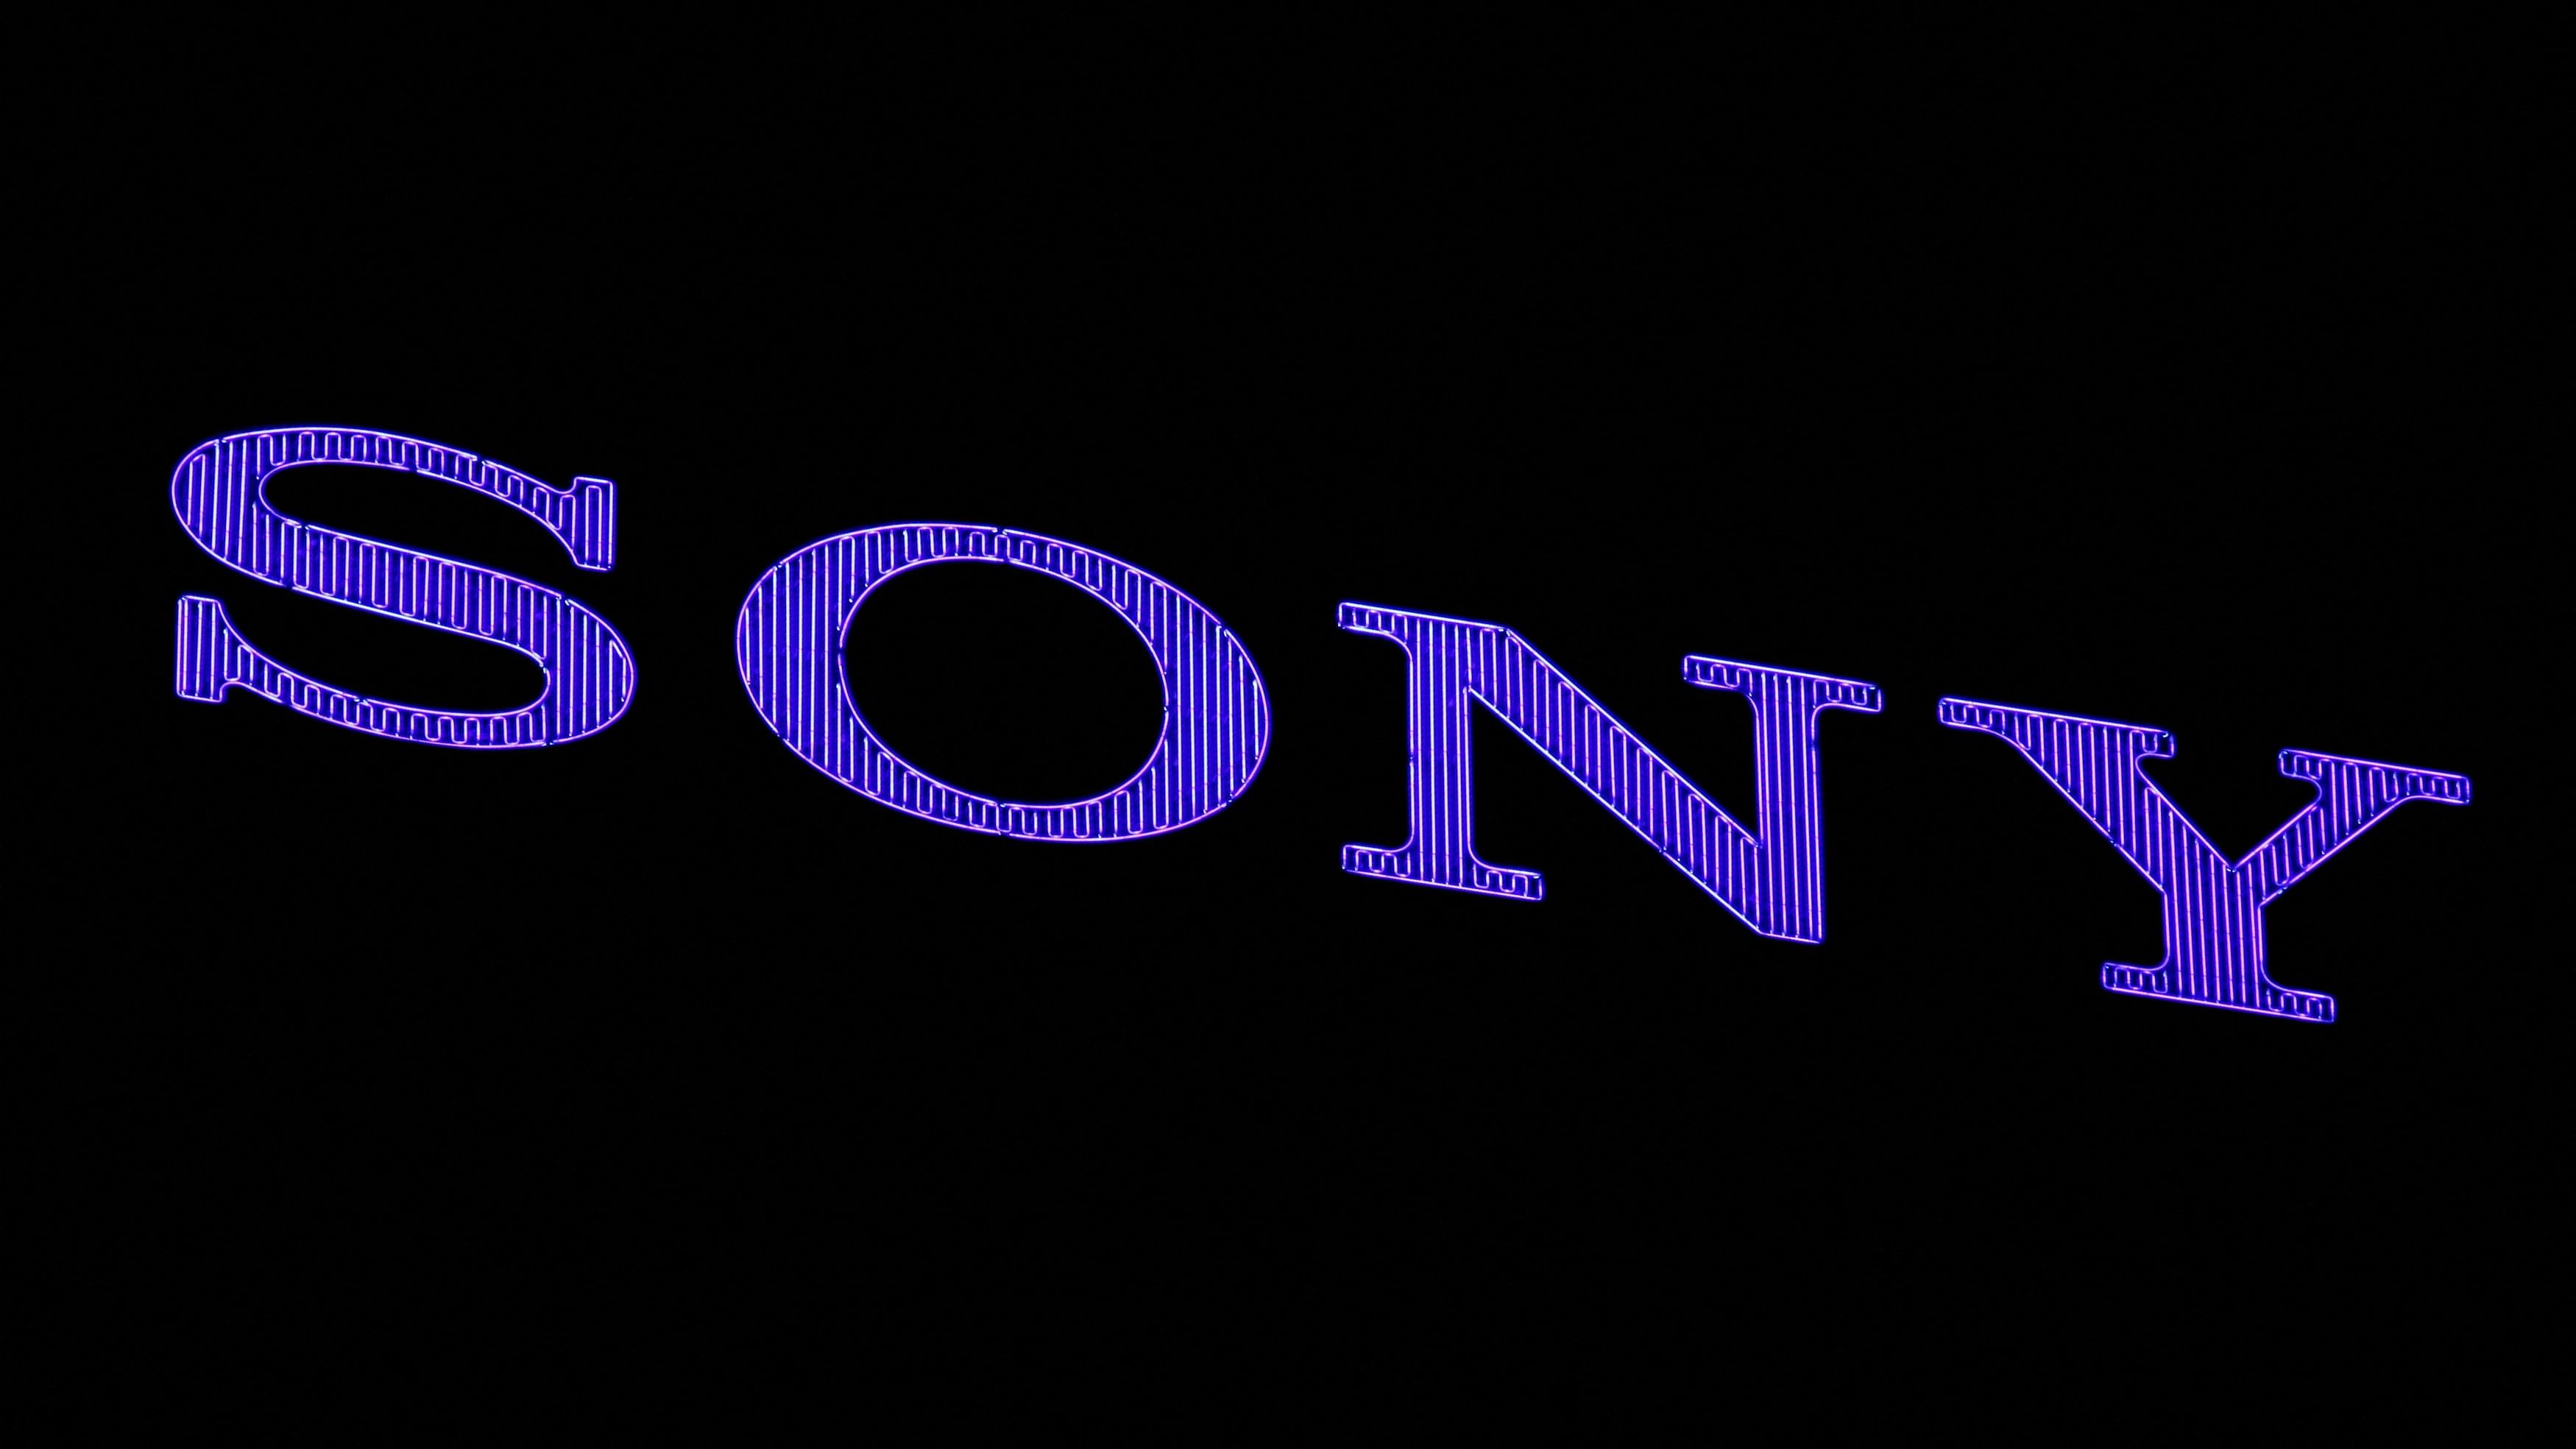 <div class="paragraphs"><p>Sony Corp's logo </p></div>